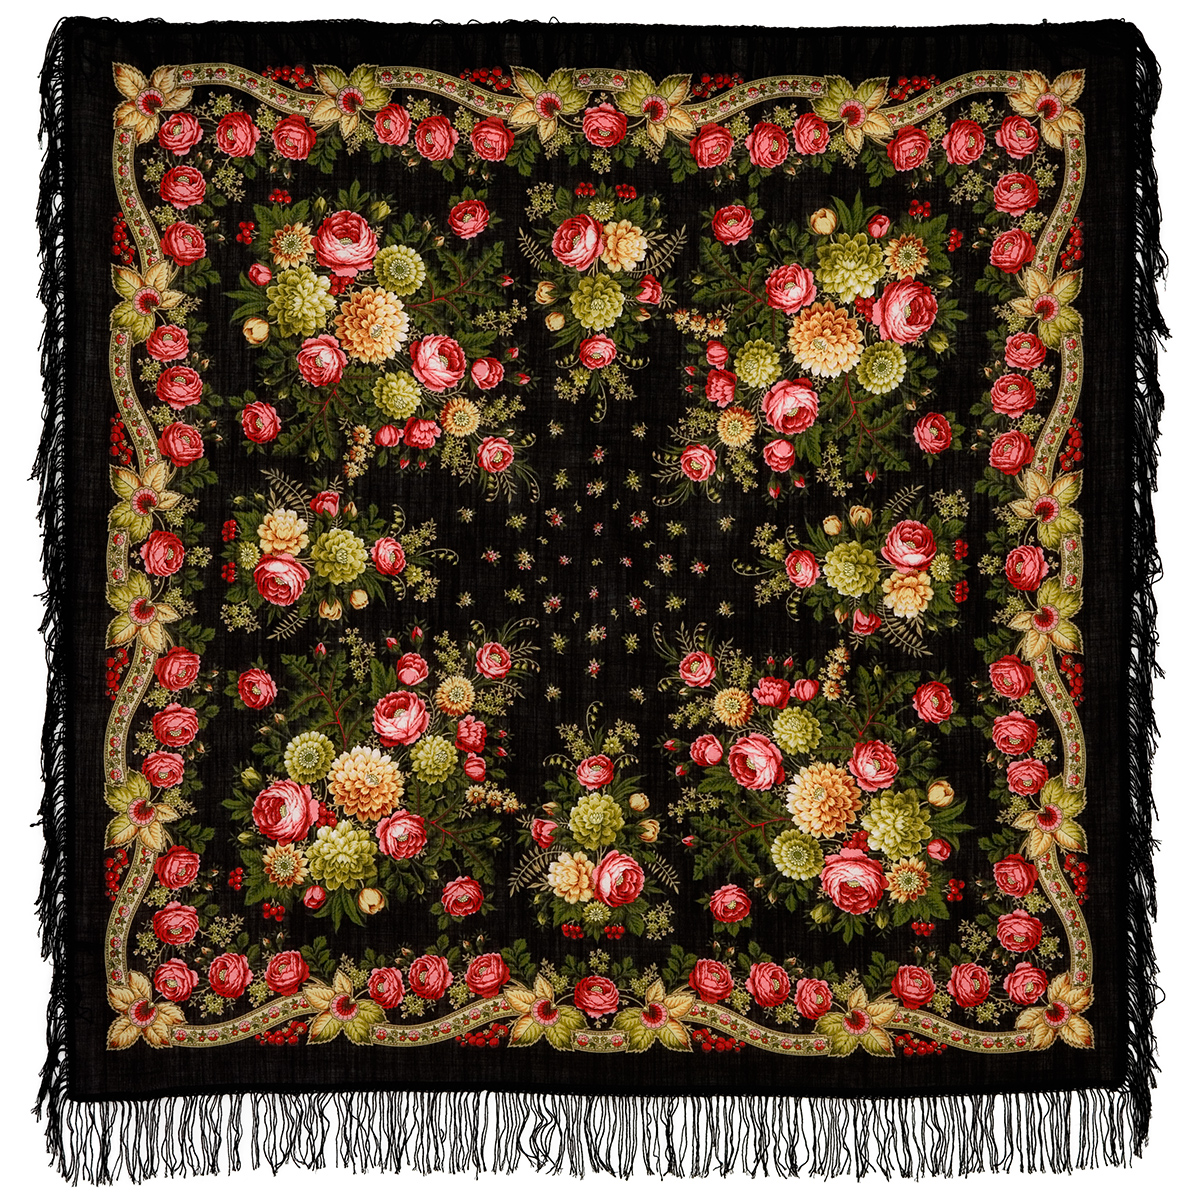 Платок женский Павловопосадский платок 1194 черный/розовый/желтый, 125х125 см купить, цены в интернет-магазинах на Мегамаркет